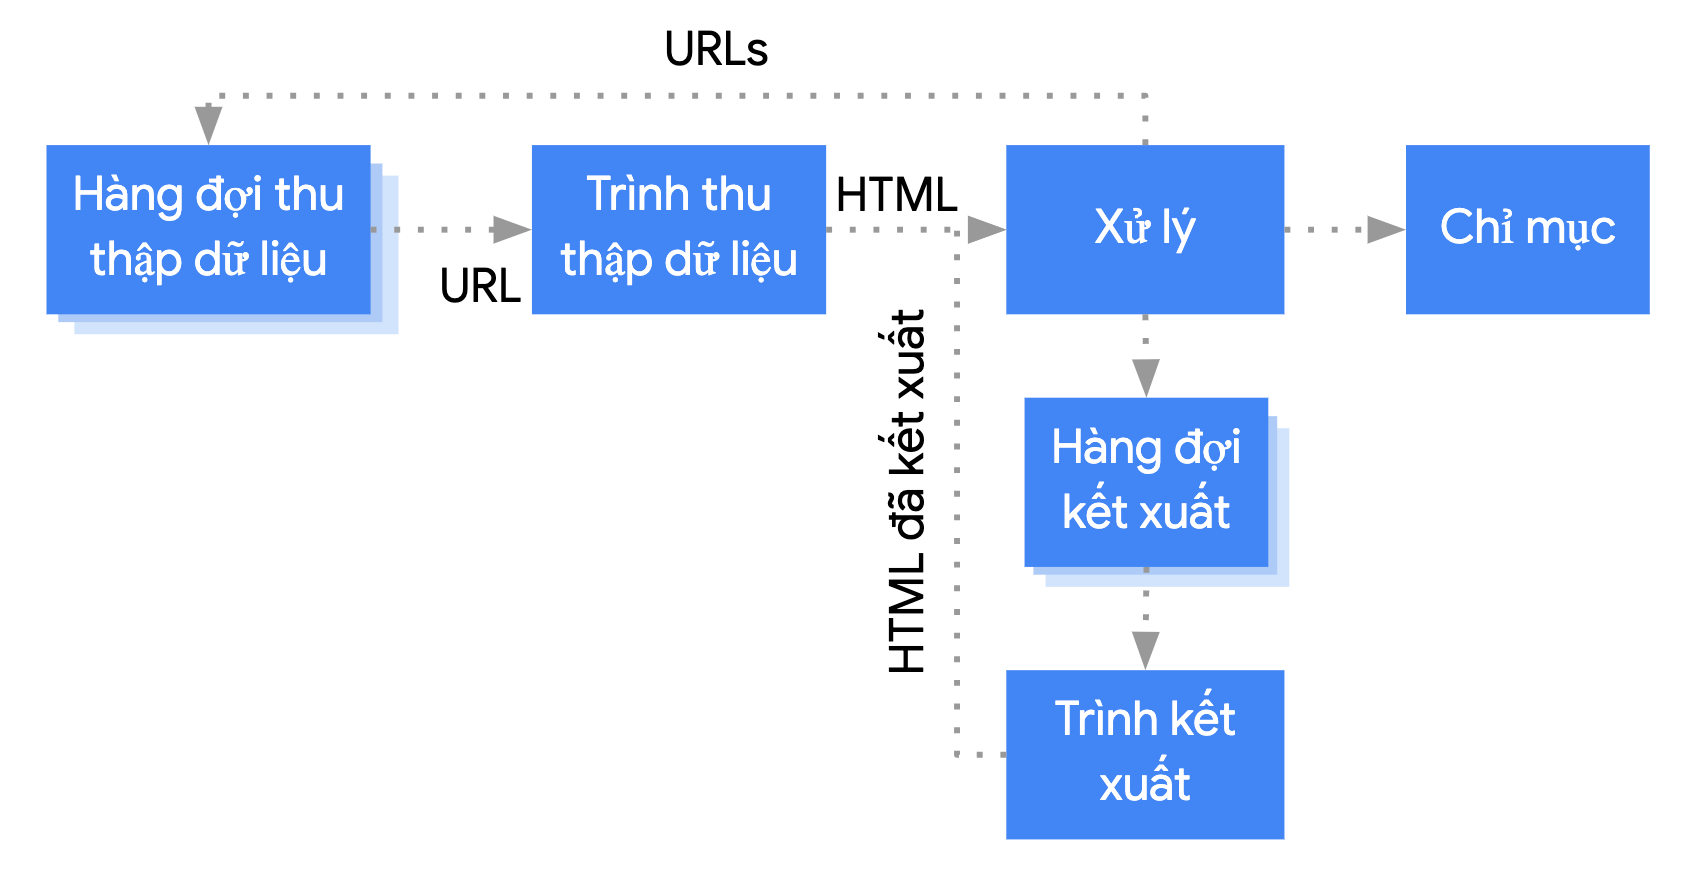 Googlebot lấy một URL từ hàng đợi thu thập dữ liệu, thu thập dữ liệu URL đó rồi chuyển sang giai đoạn xử lý. Ở giai đoạn xử lý, các đường liên kết được trích xuất rồi quay lại hàng đợi thu thập dữ liệu và trang được đưa vào hàng đợi kết xuất. Trang đi từ hàng đợi kết xuất đến trình kết xuất. Trình kết xuất chuyển mã HTML đã kết xuất trở lại giai đoạn xử lý. Ở giai đoạn xử lý, nội dung được lập chỉ mục và các đường liên kết được trích xuất, rồi tất cả được đưa vào hàng đợi thu thập dữ liệu.